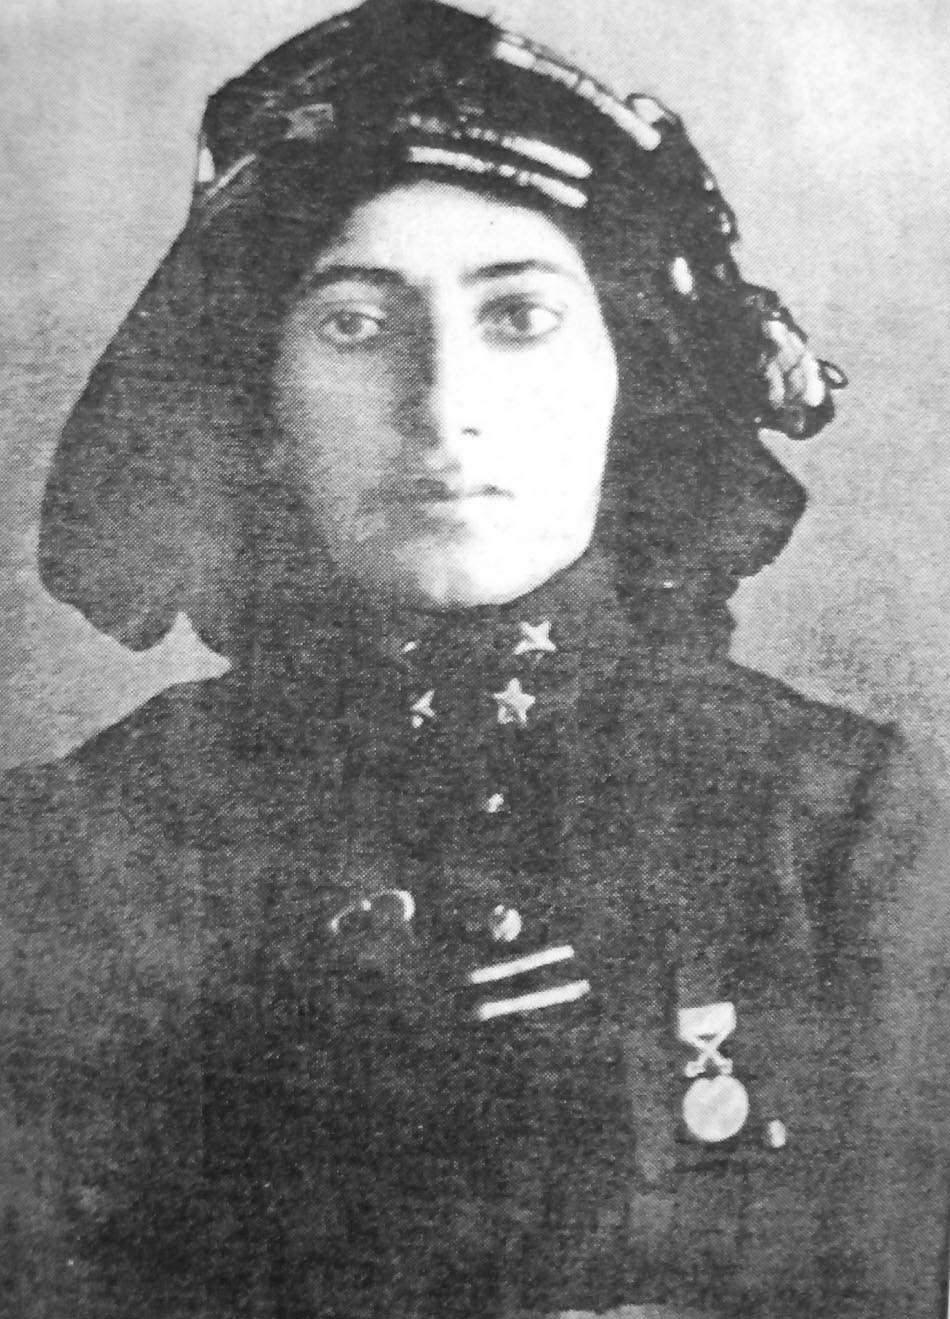 <p>Günaydın, Kara Fatma'nın Erzurum taraflarında Ermeni katliamlarından sonra çete kurup onlara karşı savaşmış tecrübeli kadınlardan olduğunu belirterek, yaşanan diyaloğun Atatürk'ün çok hoşuna gittiğini aktardı.</p>

<p>Kara Fatma'nın anılarında bu diyalogdan "İlk defa birisi sırtıma elini vurdu ve dedi ki 'Kara Fatma keşke bütün Türk kadınları sizin gibi olsa' dedi." şeklinde bahsettiğini aktaran Günaydın, Atatürk'ün verdiği izinle savaşa katılan Kara Fatma'nın Batı Cephesi'nde ulusal kurtuluş mücadelesinde savaştığını ifade etti.</p>

<p>Günaydın, Milli Mücadele kahramanlarından Fatma Seher Erden'in cesareti ve gözü karalığı dolayısıyla "Kara Fatma" lakabını aldığını belirtti. </p>
